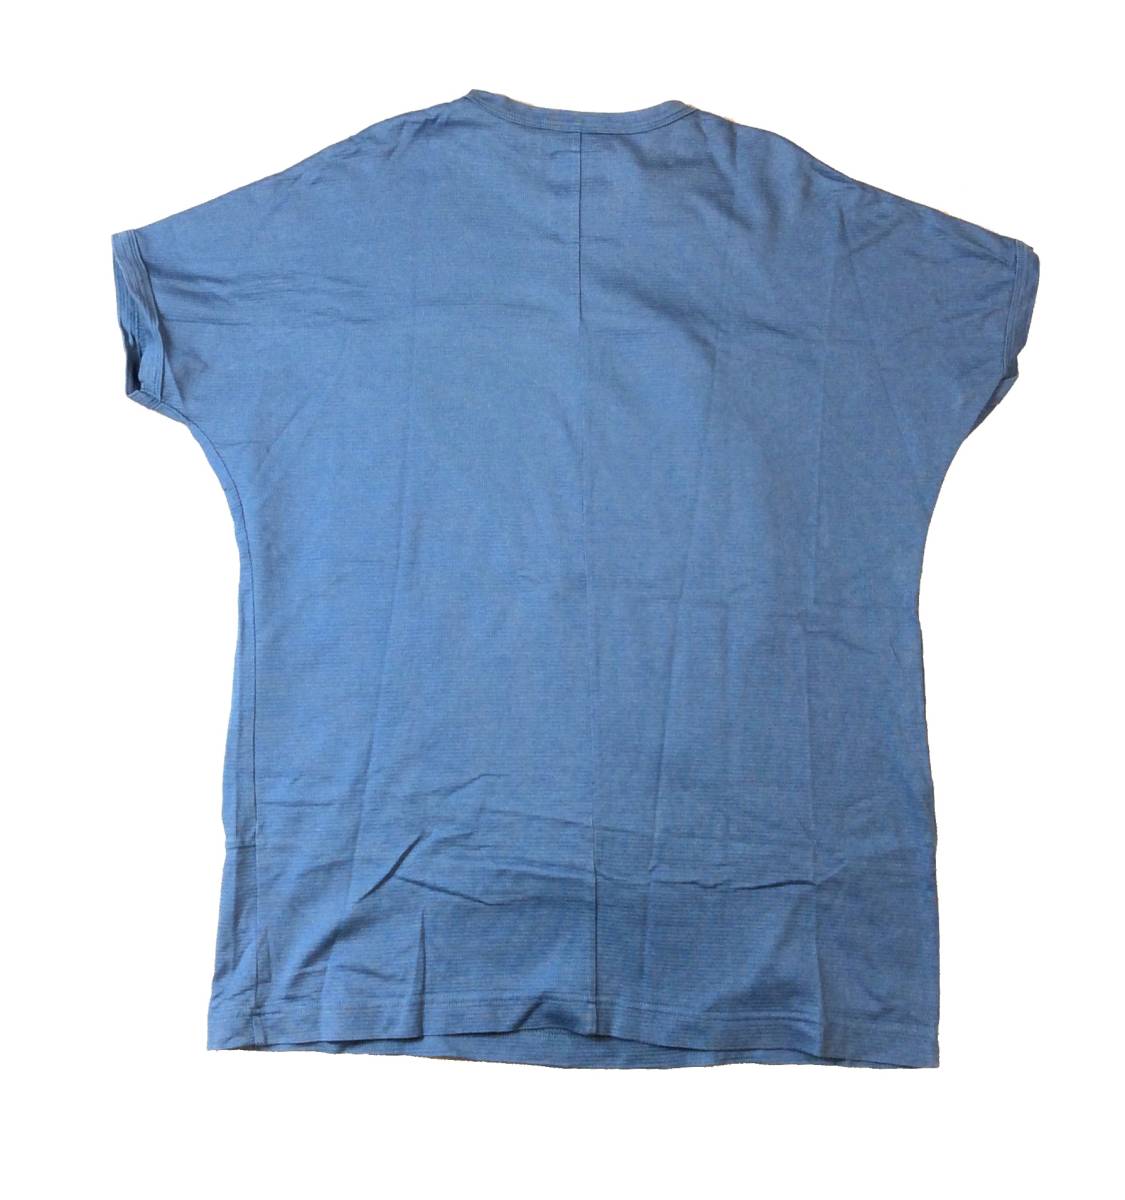 SHAREEF シャリーフ デザイントップス Tシャツ ドルマンスリーブ ブルー/ブラック レーヨン コットン メンズ 1_画像4